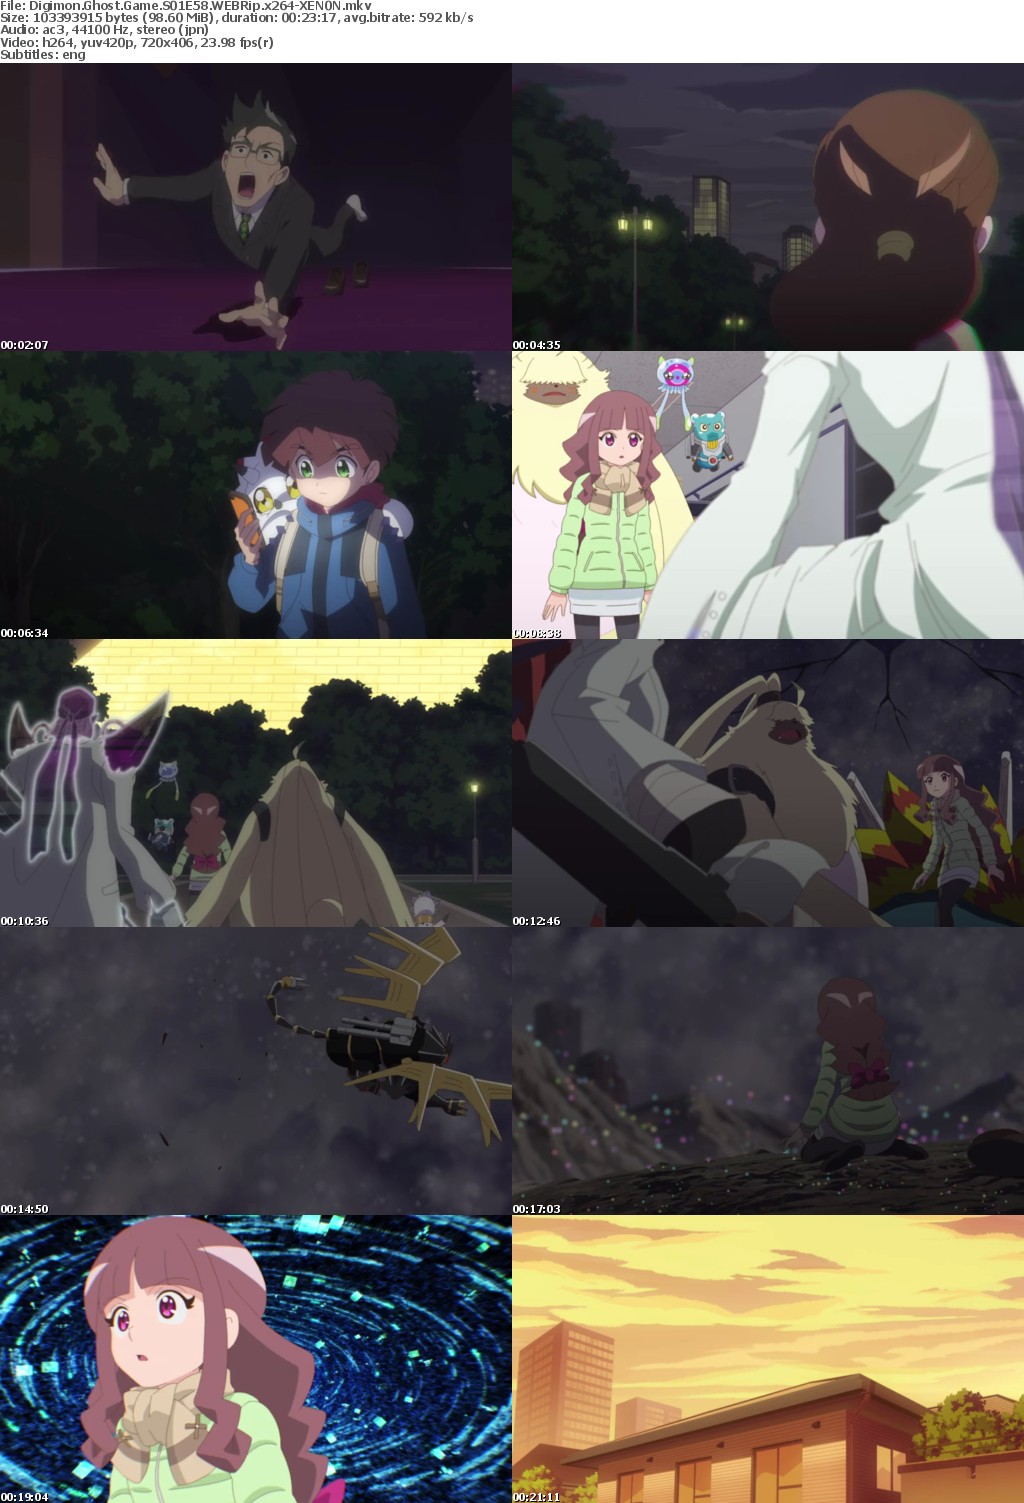 Digimon Ghost Game S01E58 WEBRip x264-XEN0N